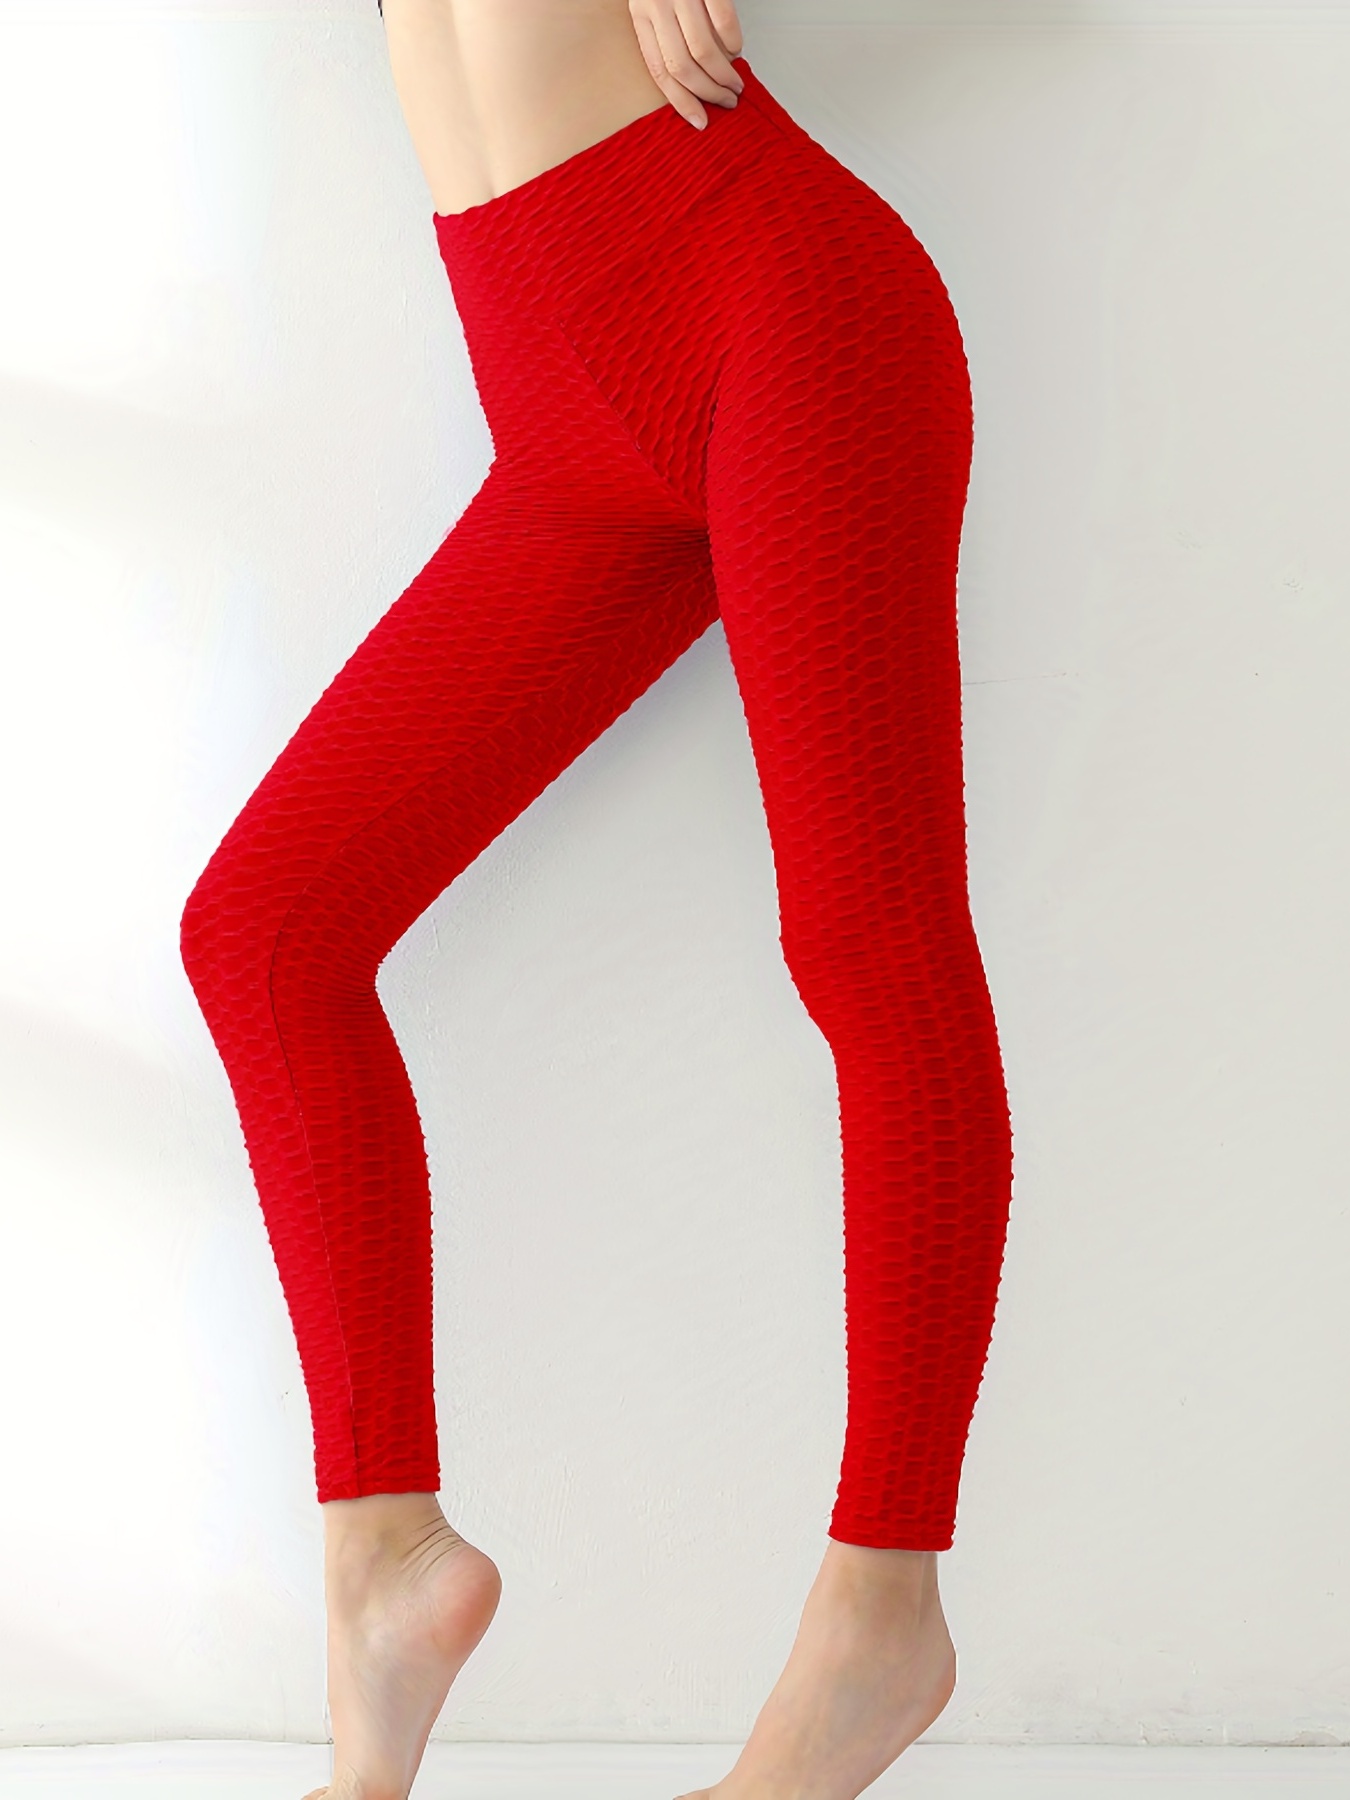 Aayomet Yoga Pants Color USA Leggings Custom Patriotic Running Pants  Pilates For Yoga Women Yoga Pants,Red M 